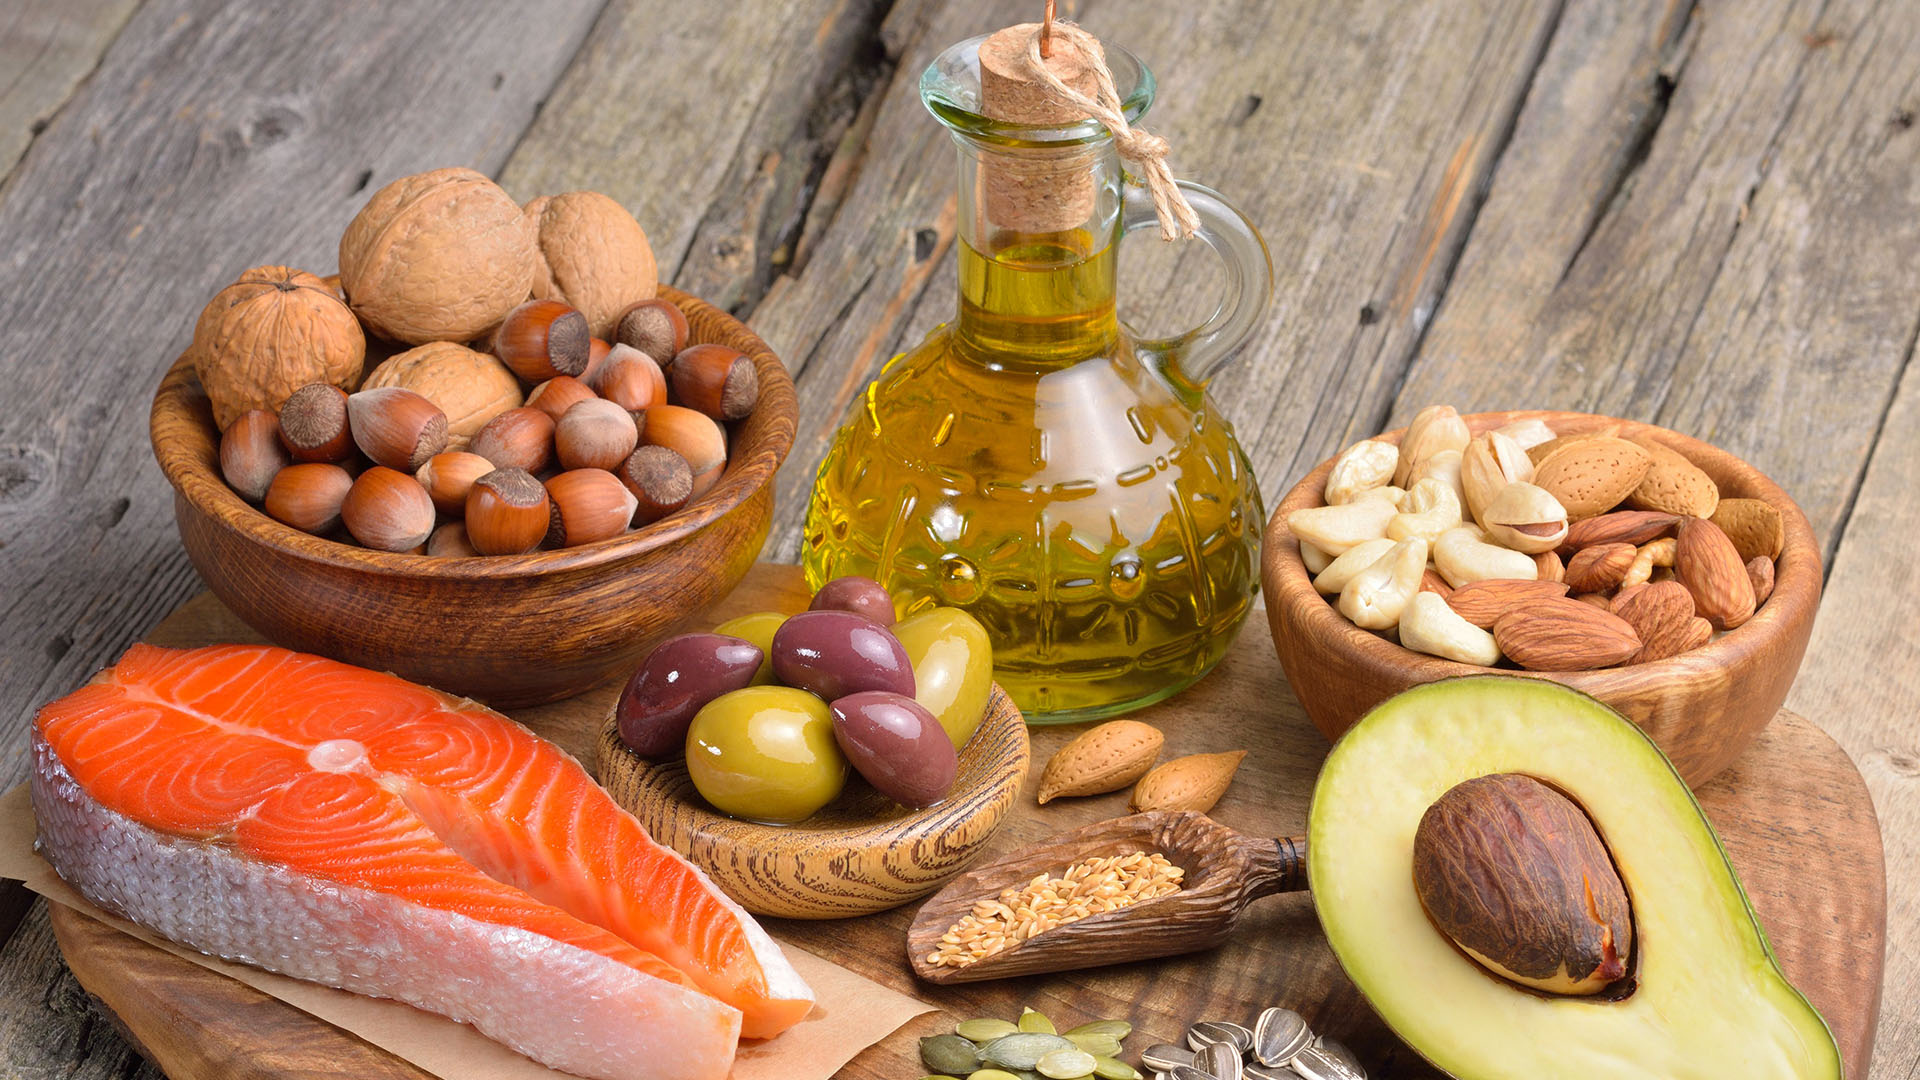 Los hombres consuman muchas grasas monoinsaturadas, que se encuentran en el aceite de oliva, los aguacates y las nueces, para aumentar sus niveles de testosterona (Shutterstock)